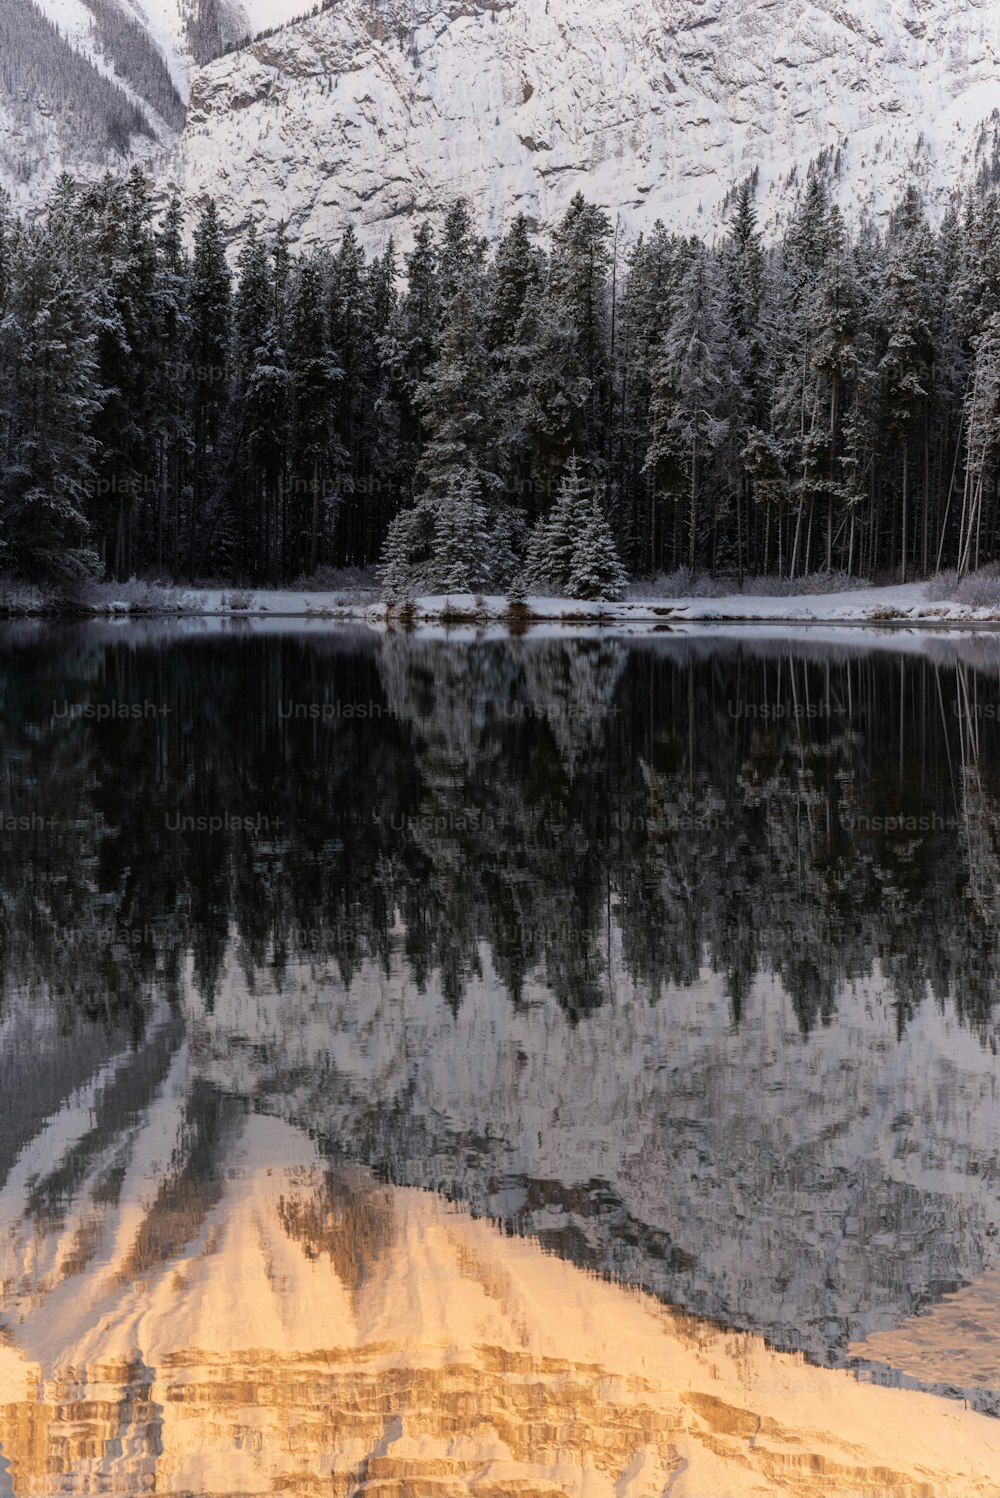 Un lago rodeado de nieve y árboles